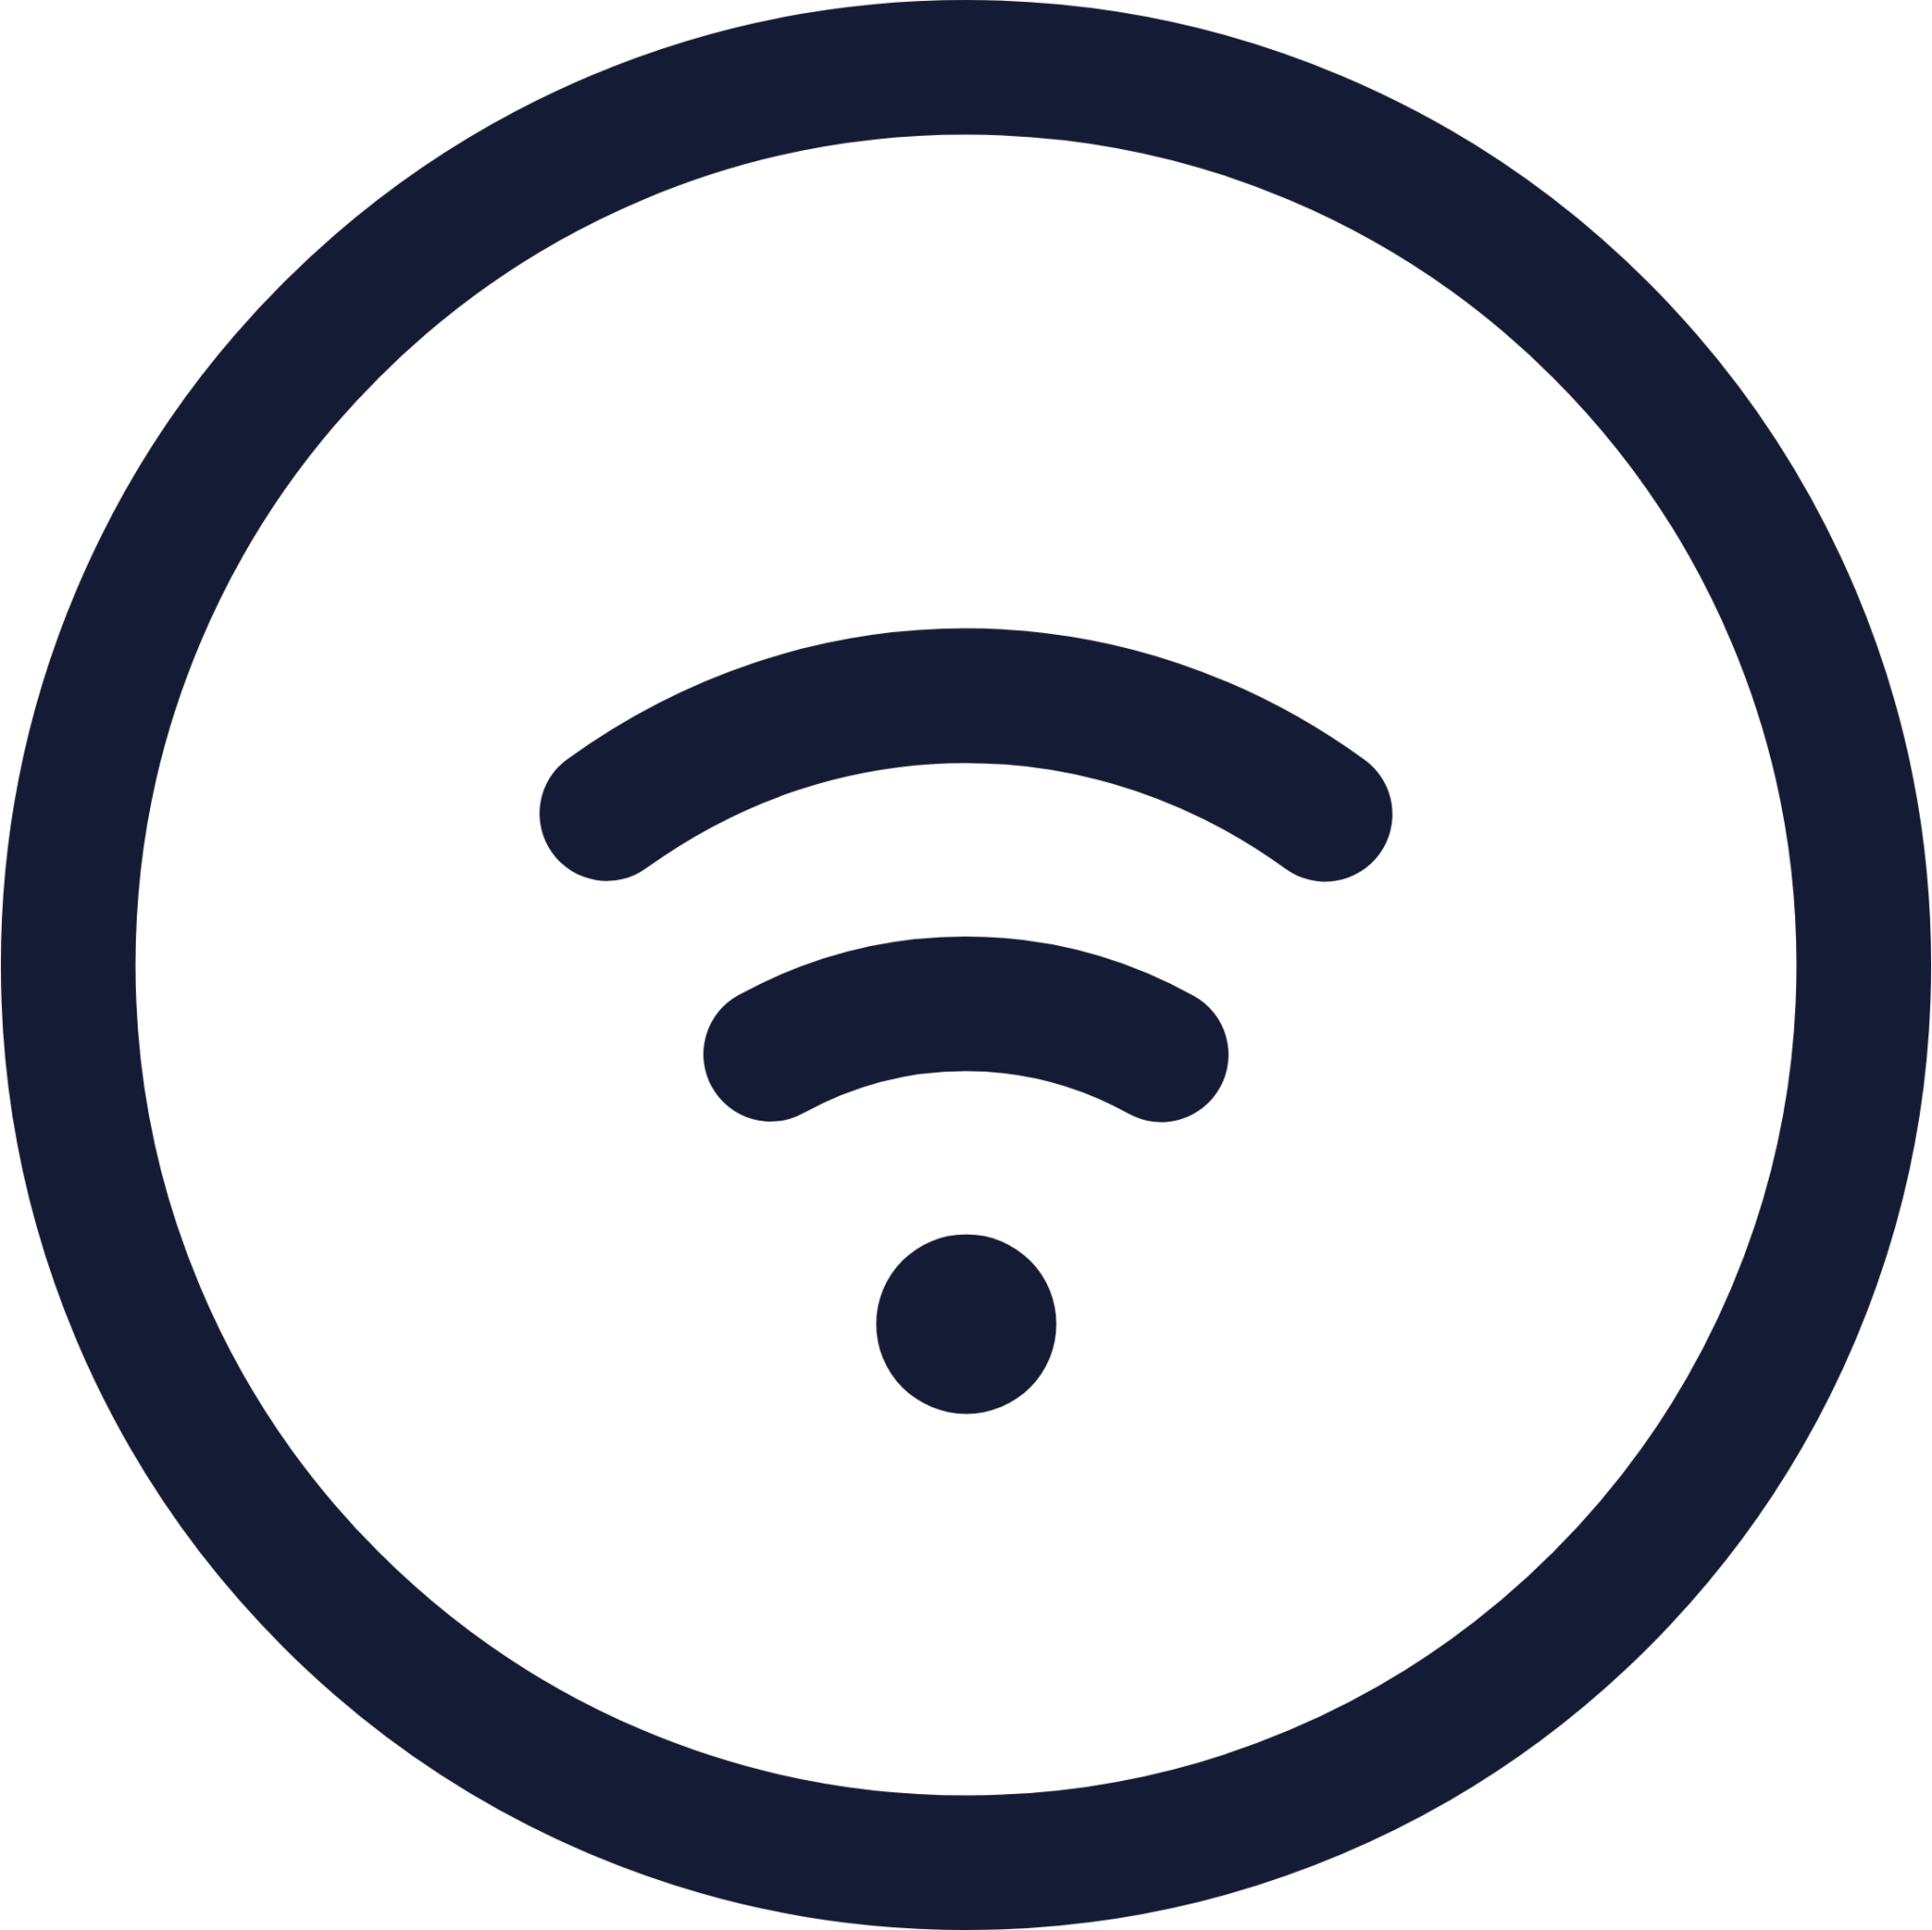 wifi circle icon